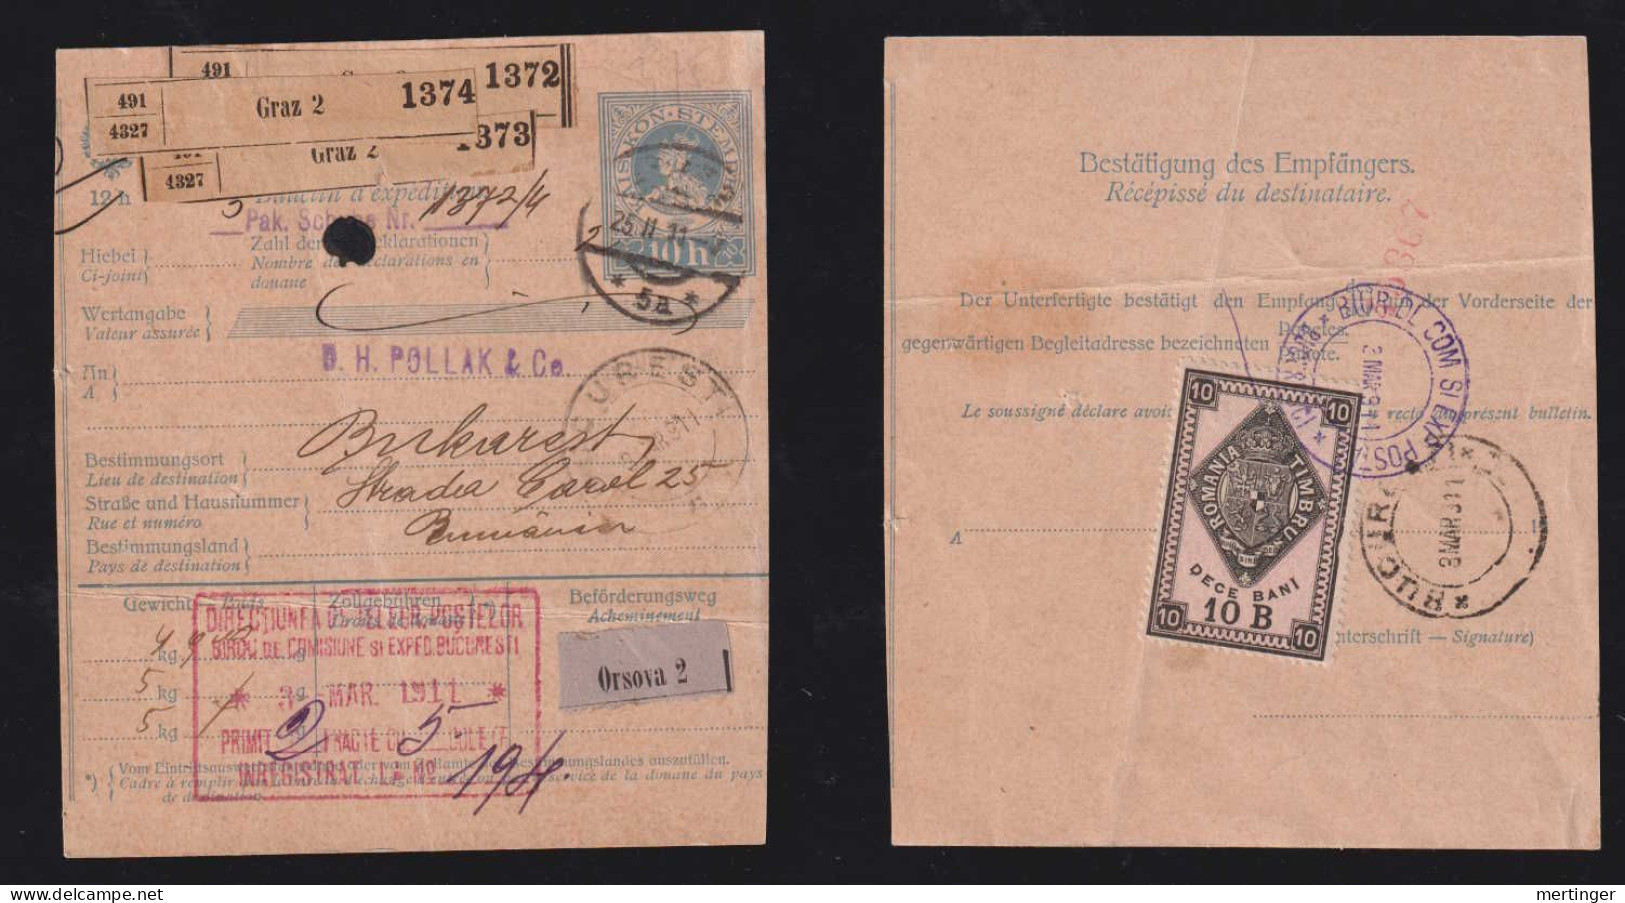 Rumänien Romania 1911 Parcle Card GRAZ Austria X BUCURESTI With Revenue Stamp - Briefe U. Dokumente